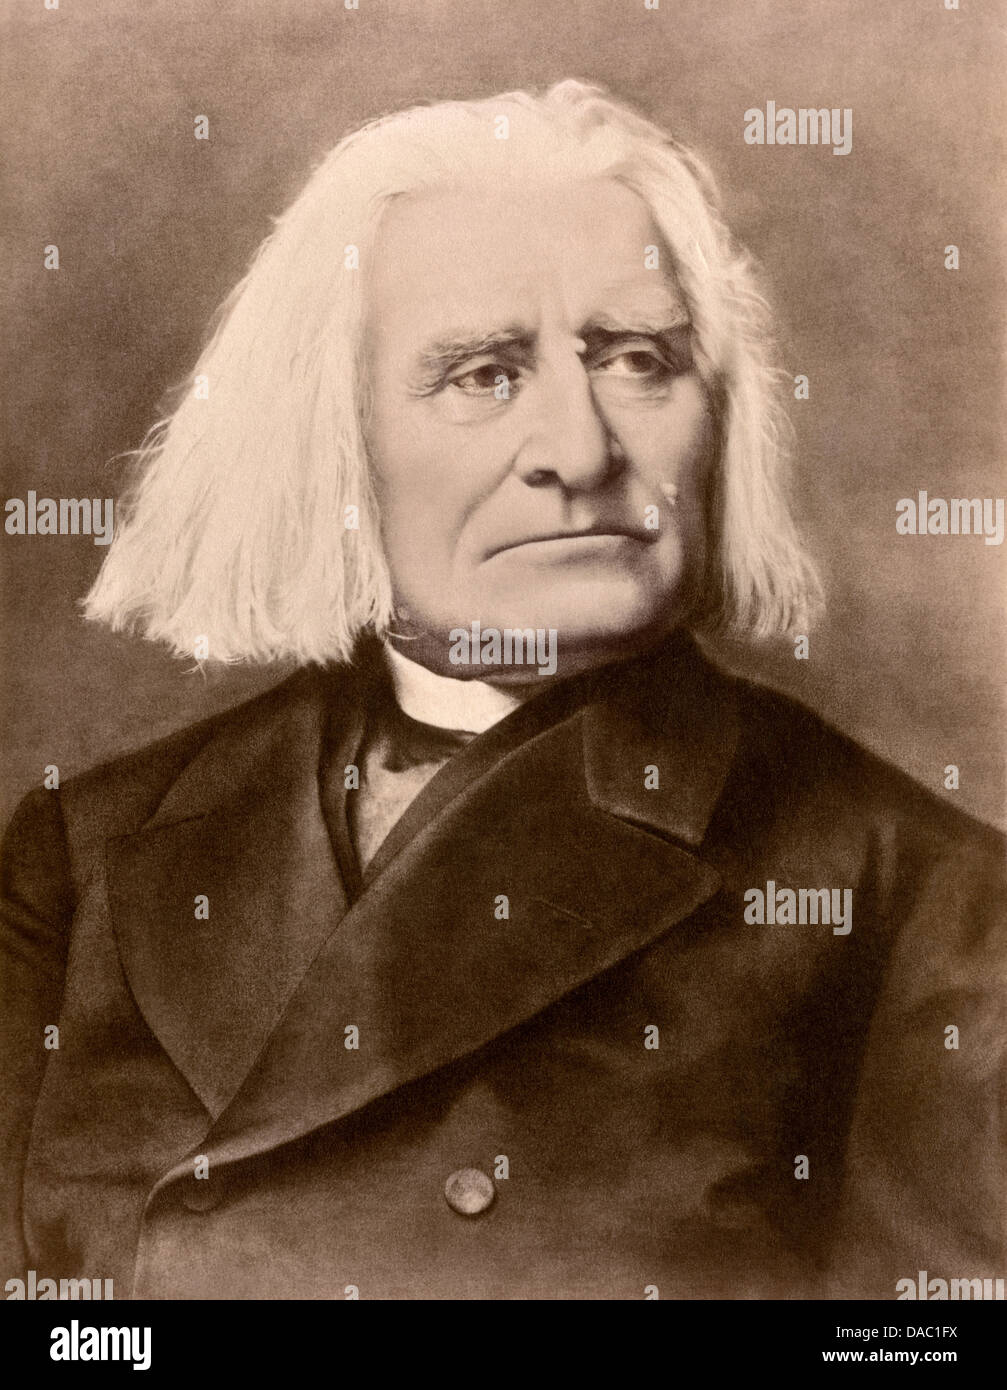 Ungarische Komponist und Dirigent Franz Liszt. Foto Stockfoto